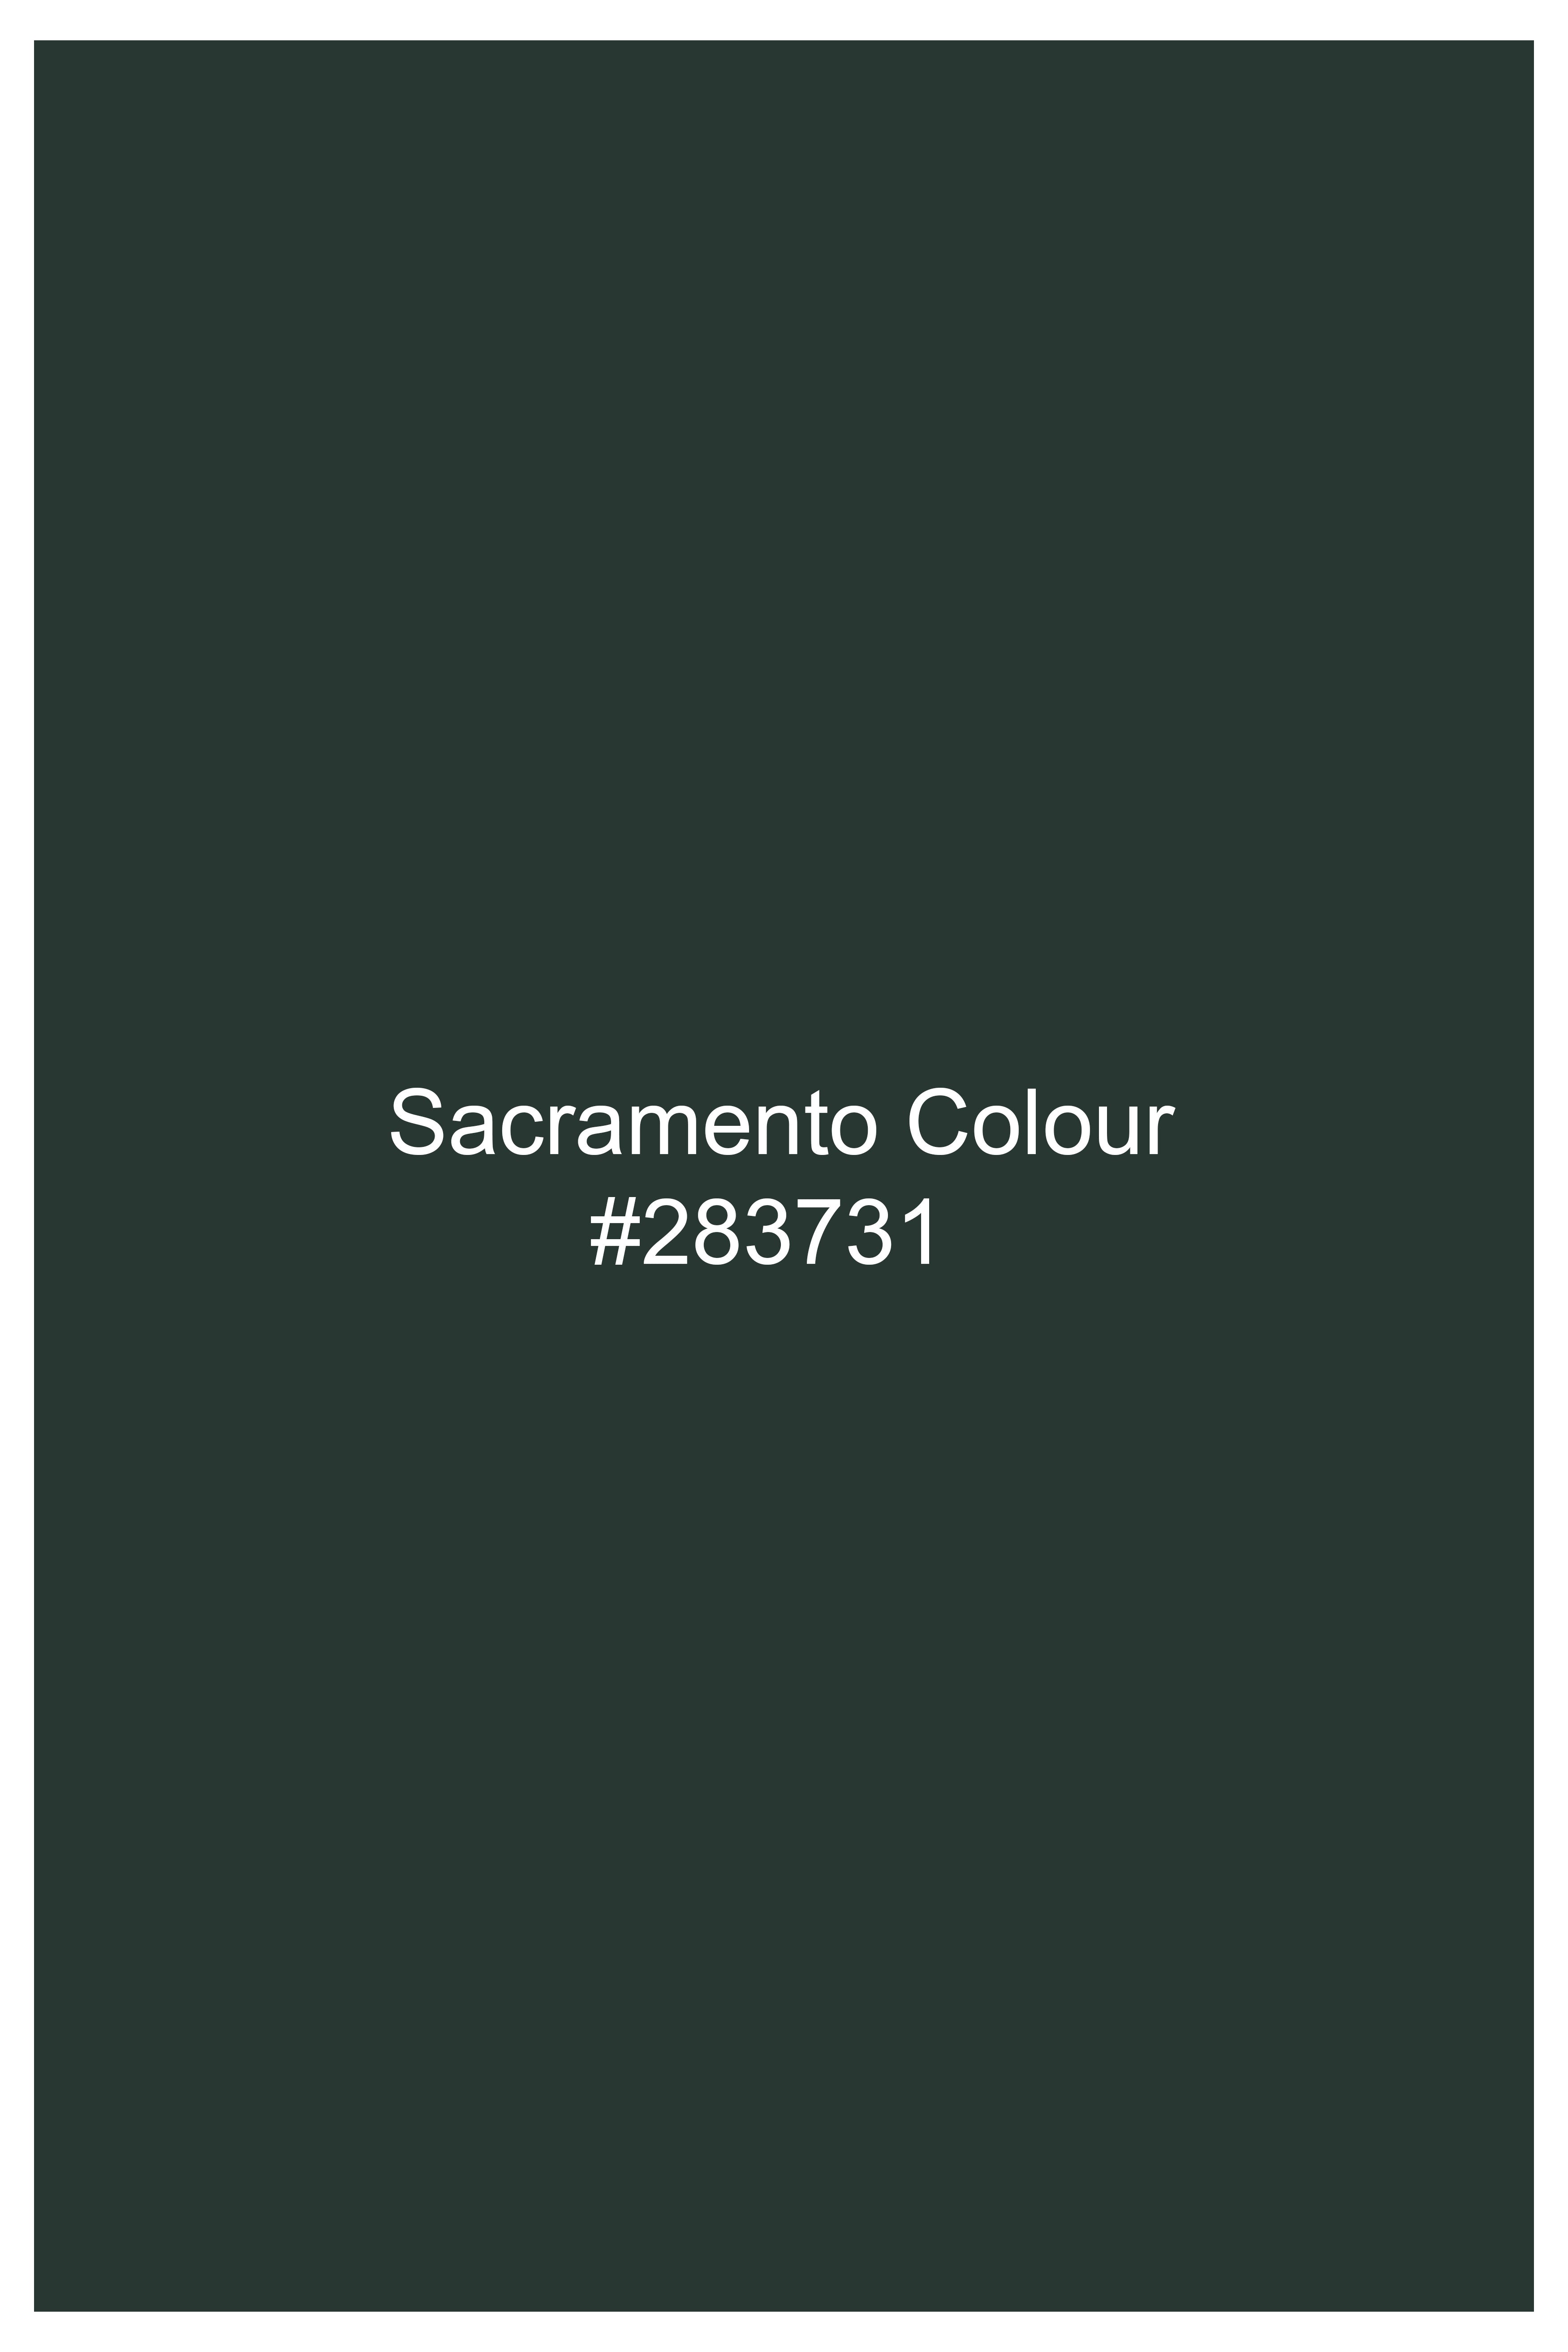 Sacramento Green Premium Cotton Chinos Pant